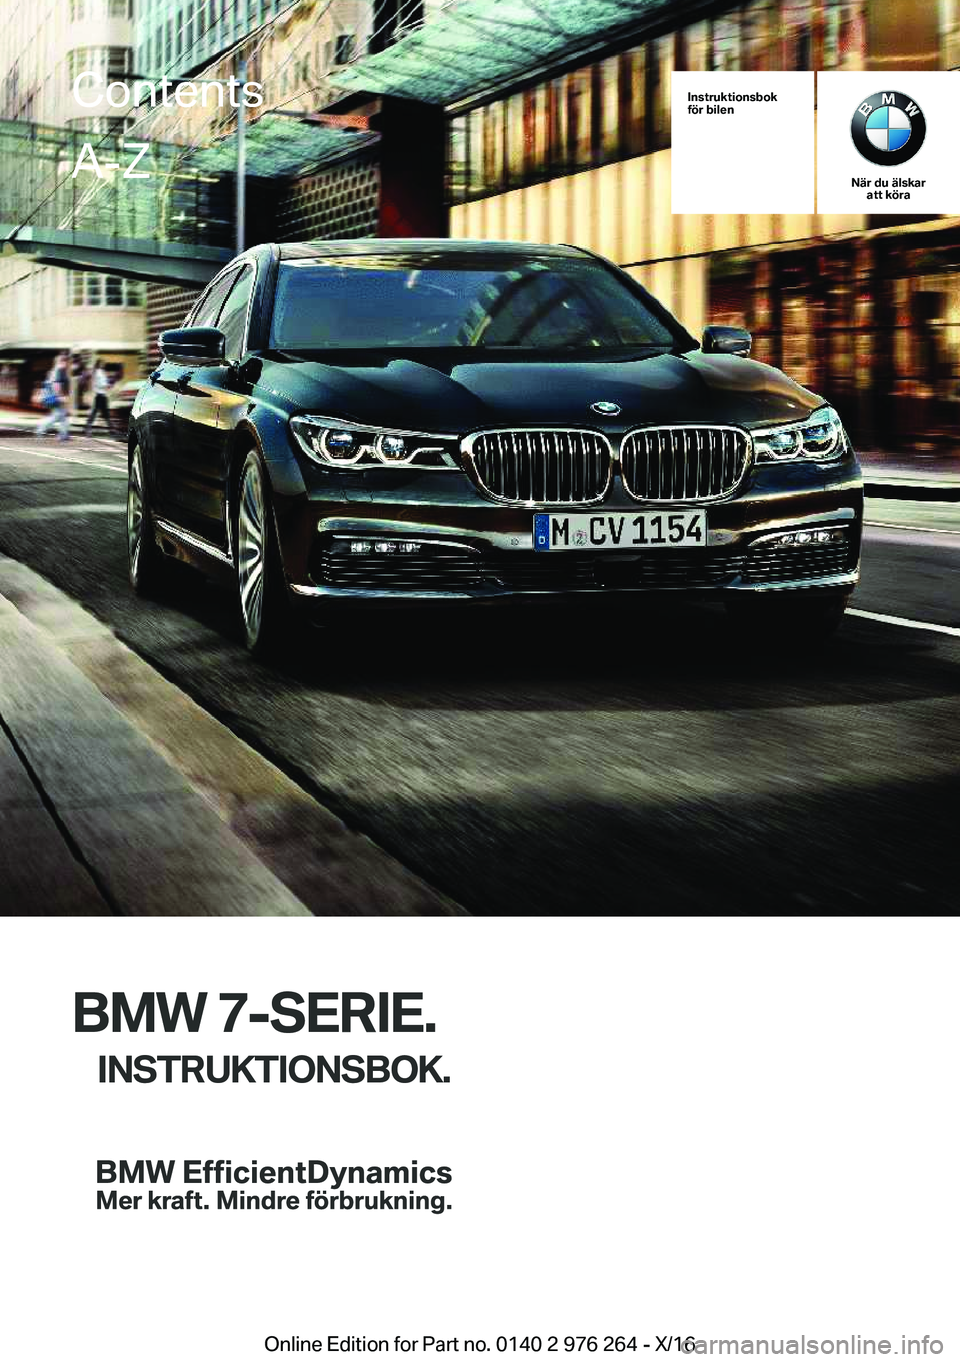 BMW 7 SERIES 2017  InstruktionsbÖcker (in Swedish) �I�n�s�t�r�u�k�t�i�o�n�s�b�o�k
�f�